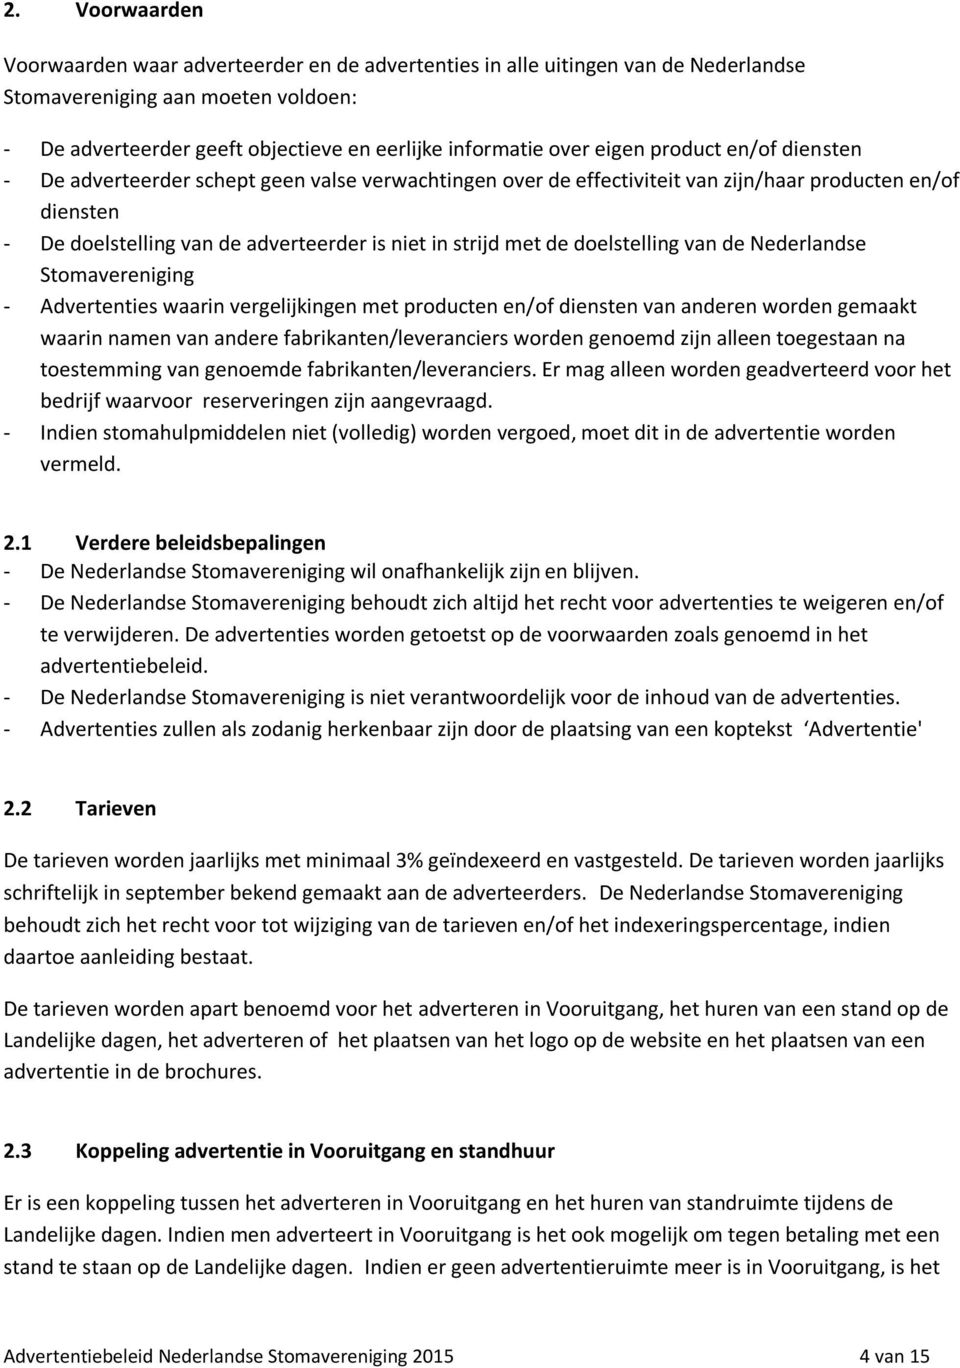 de doelstelling van de Nederlandse Stomavereniging - Advertenties waarin vergelijkingen met producten en/of diensten van anderen worden gemaakt waarin namen van andere fabrikanten/leveranciers worden